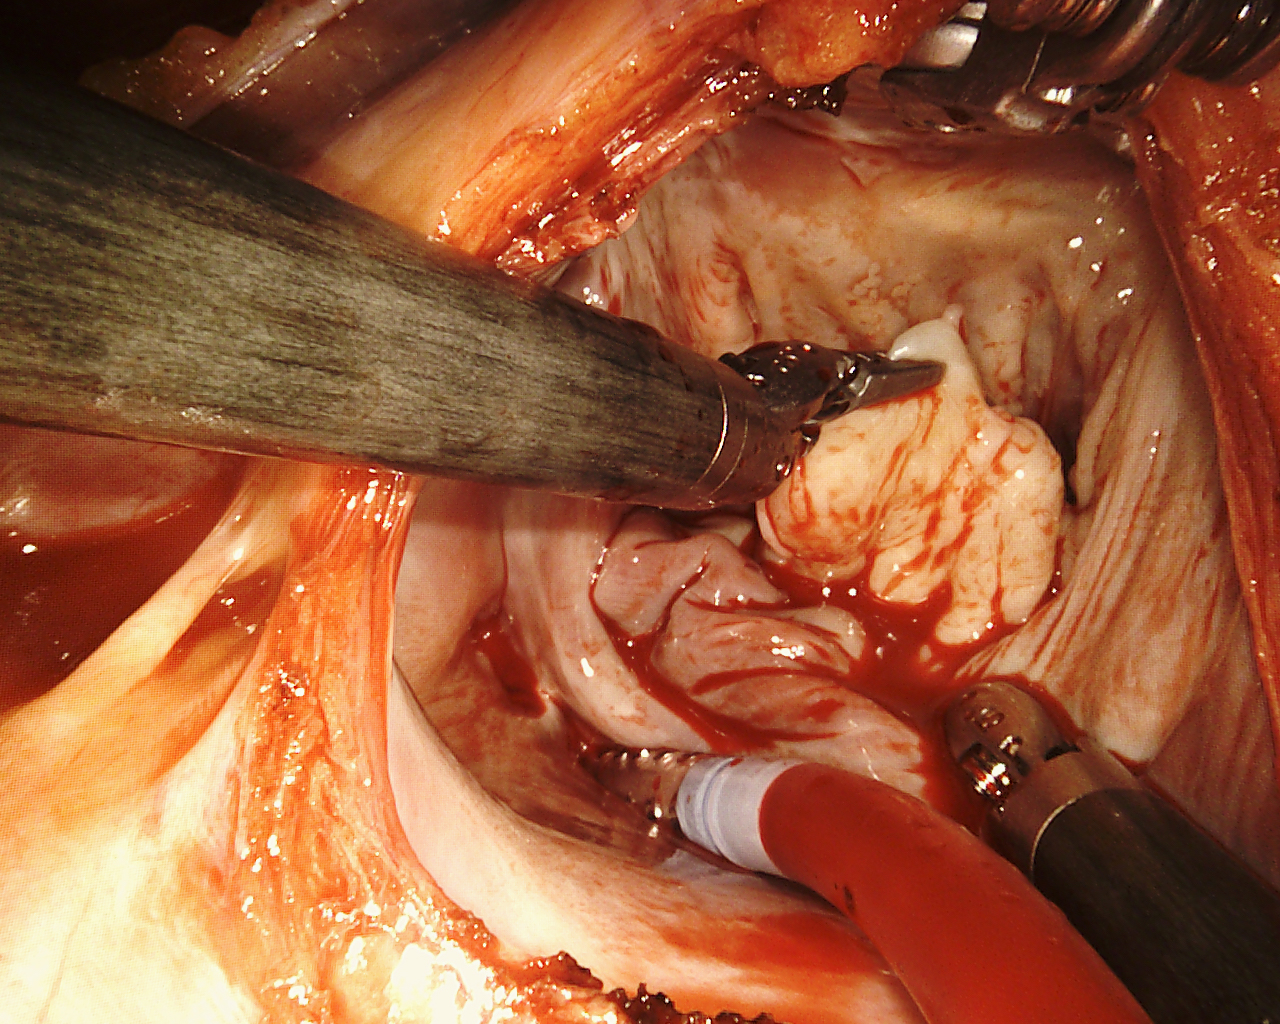 Mitral valve repair for degenerative disease